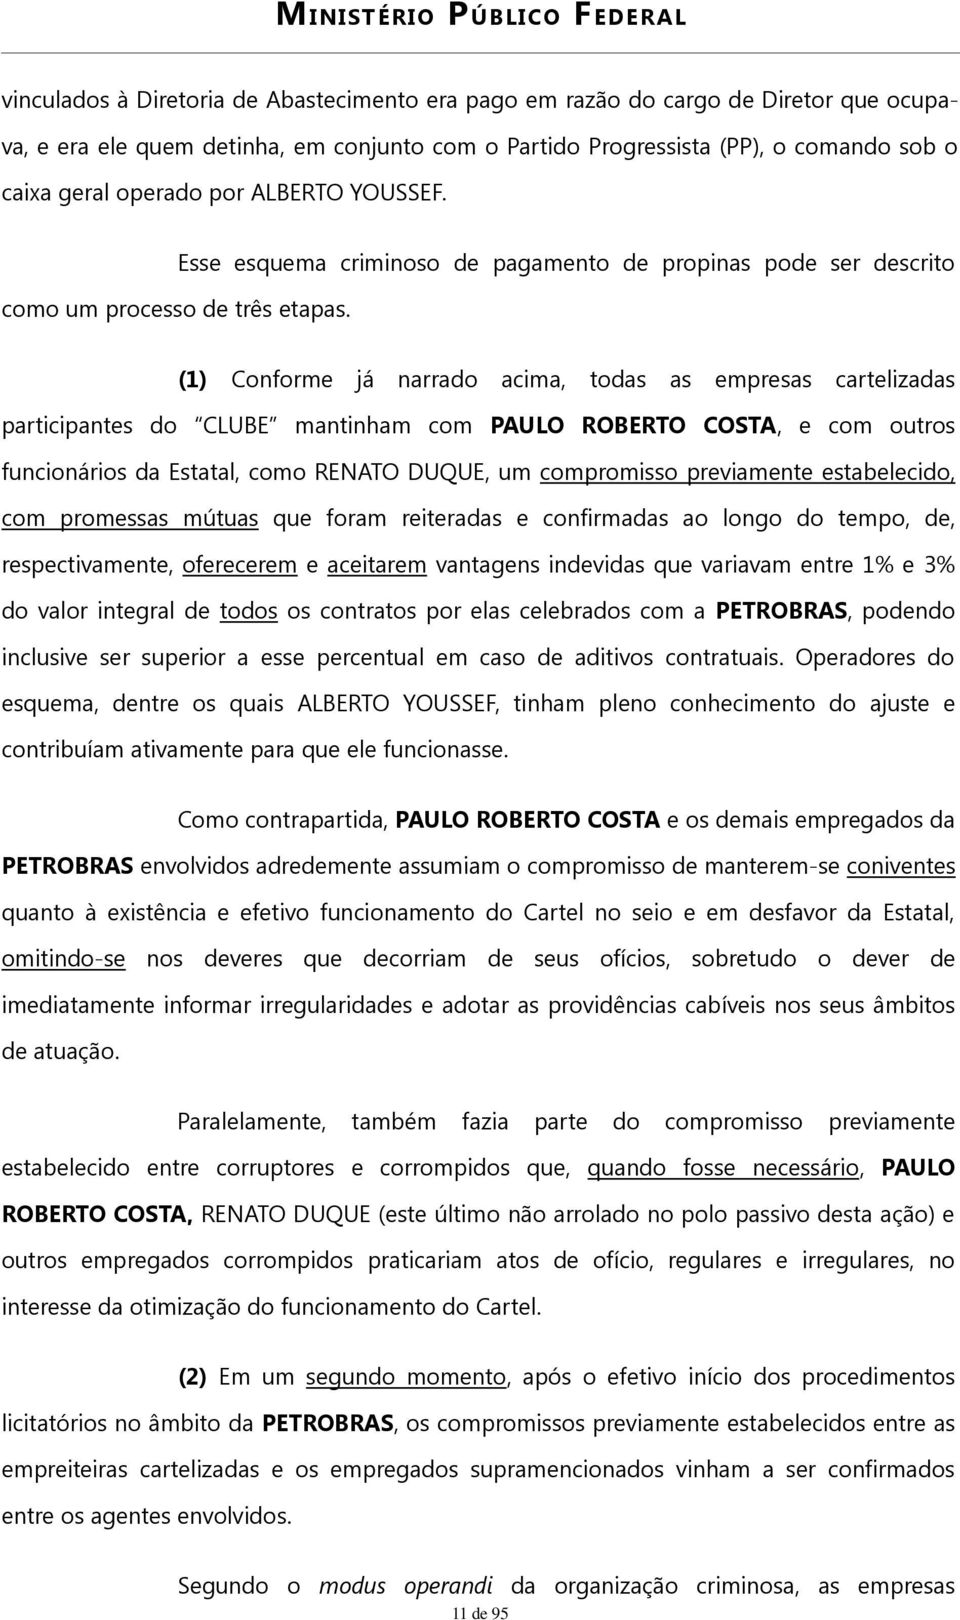 Esse esquema criminoso de pagamento de propinas pode ser descrito (1) Conforme já narrado acima, todas as empresas cartelizadas participantes do CLUBE mantinham com PAULO ROBERTO COSTA, e com outros